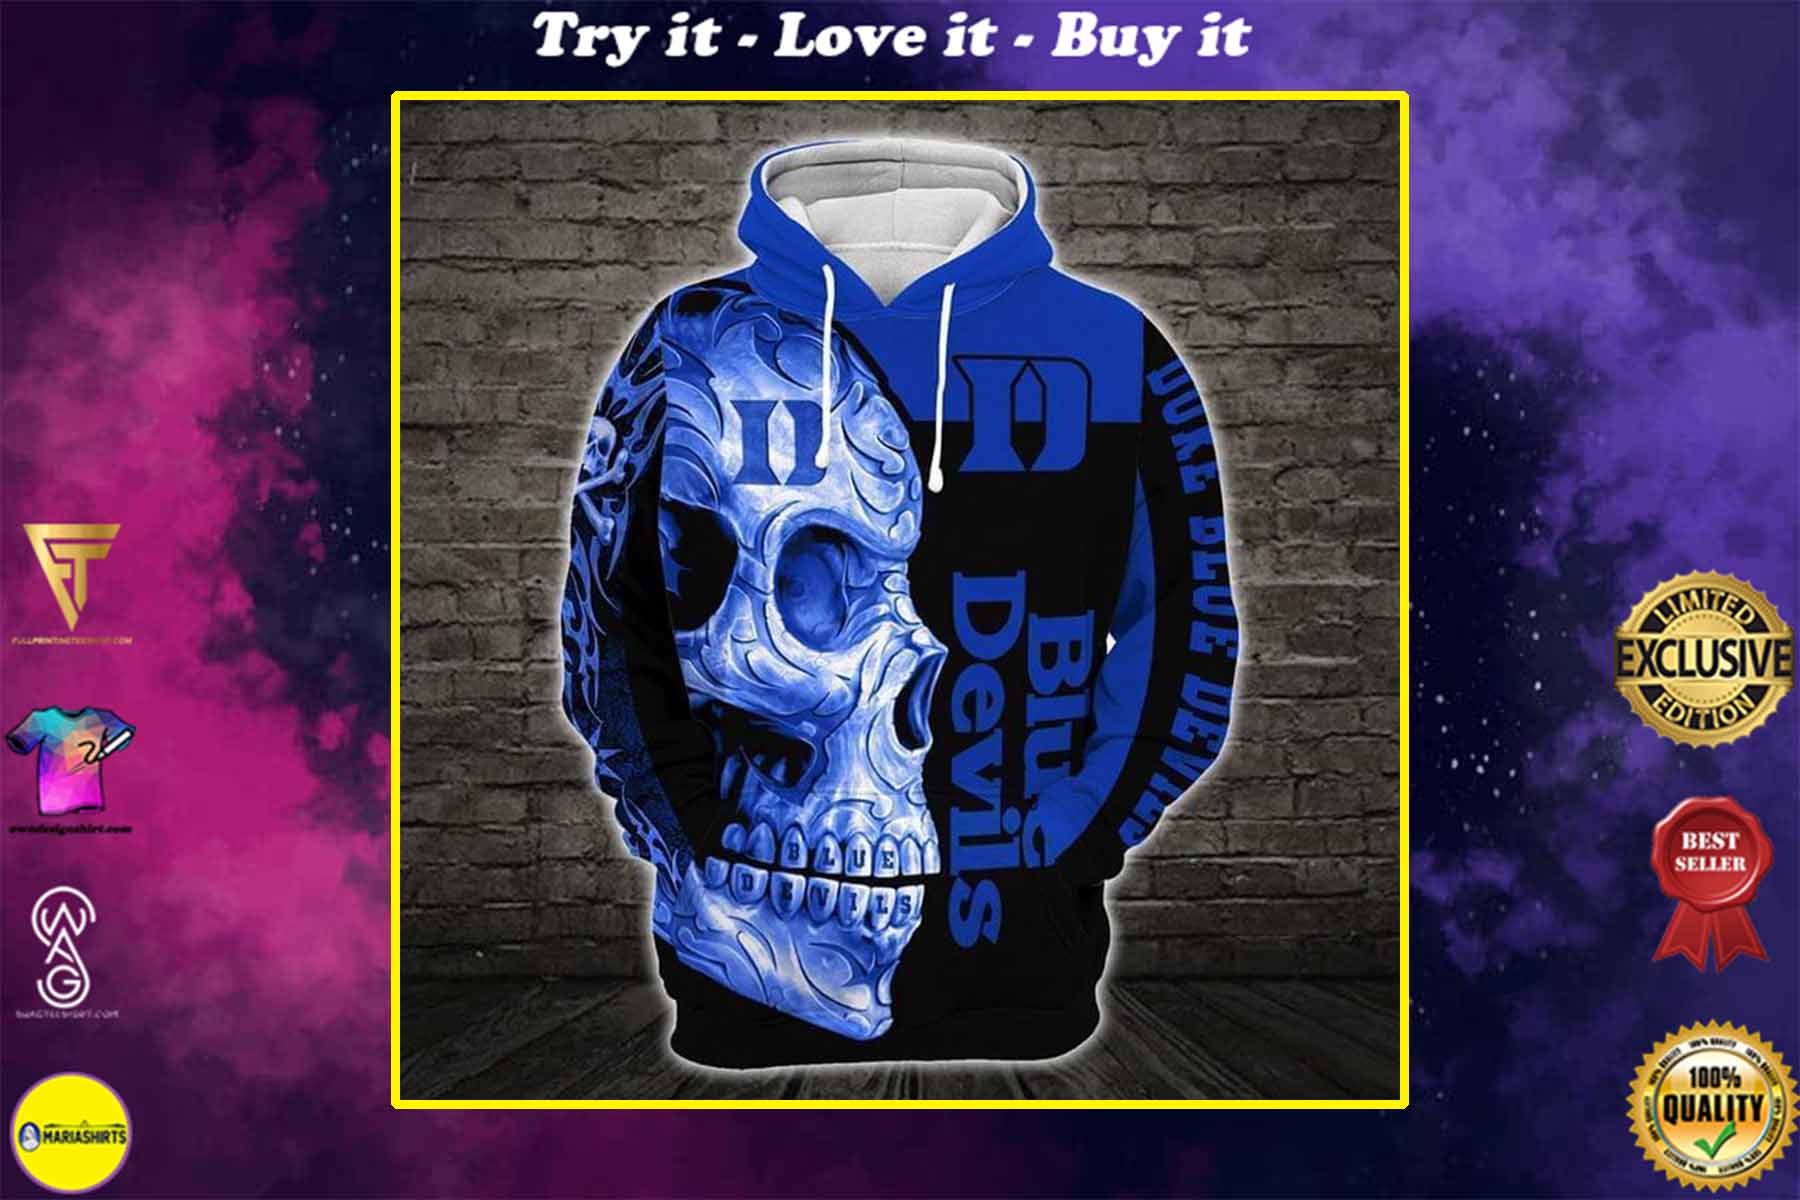 [highest selling] sugar skull duke blue devils mens basketball full over printed shirt - maria